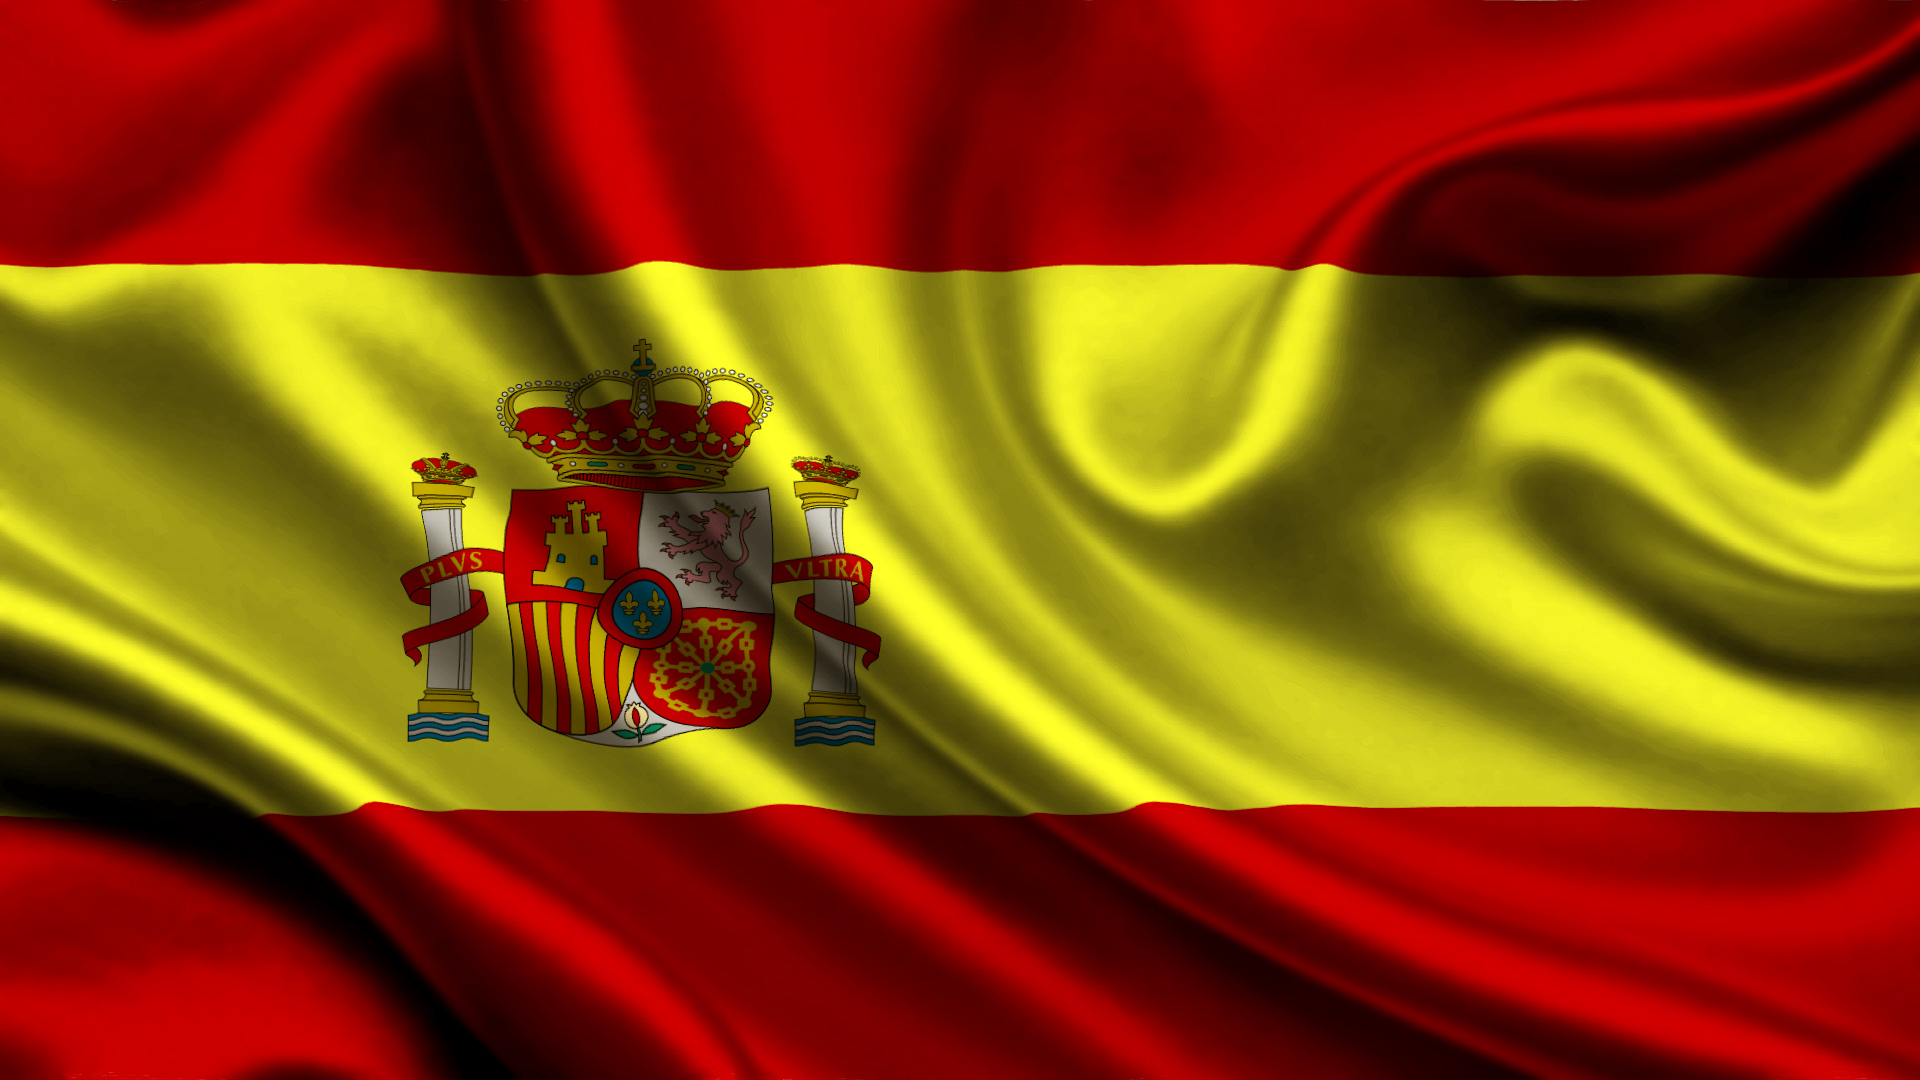 Pemerintah Spanyol akan mengatur kotak rampasan di video game